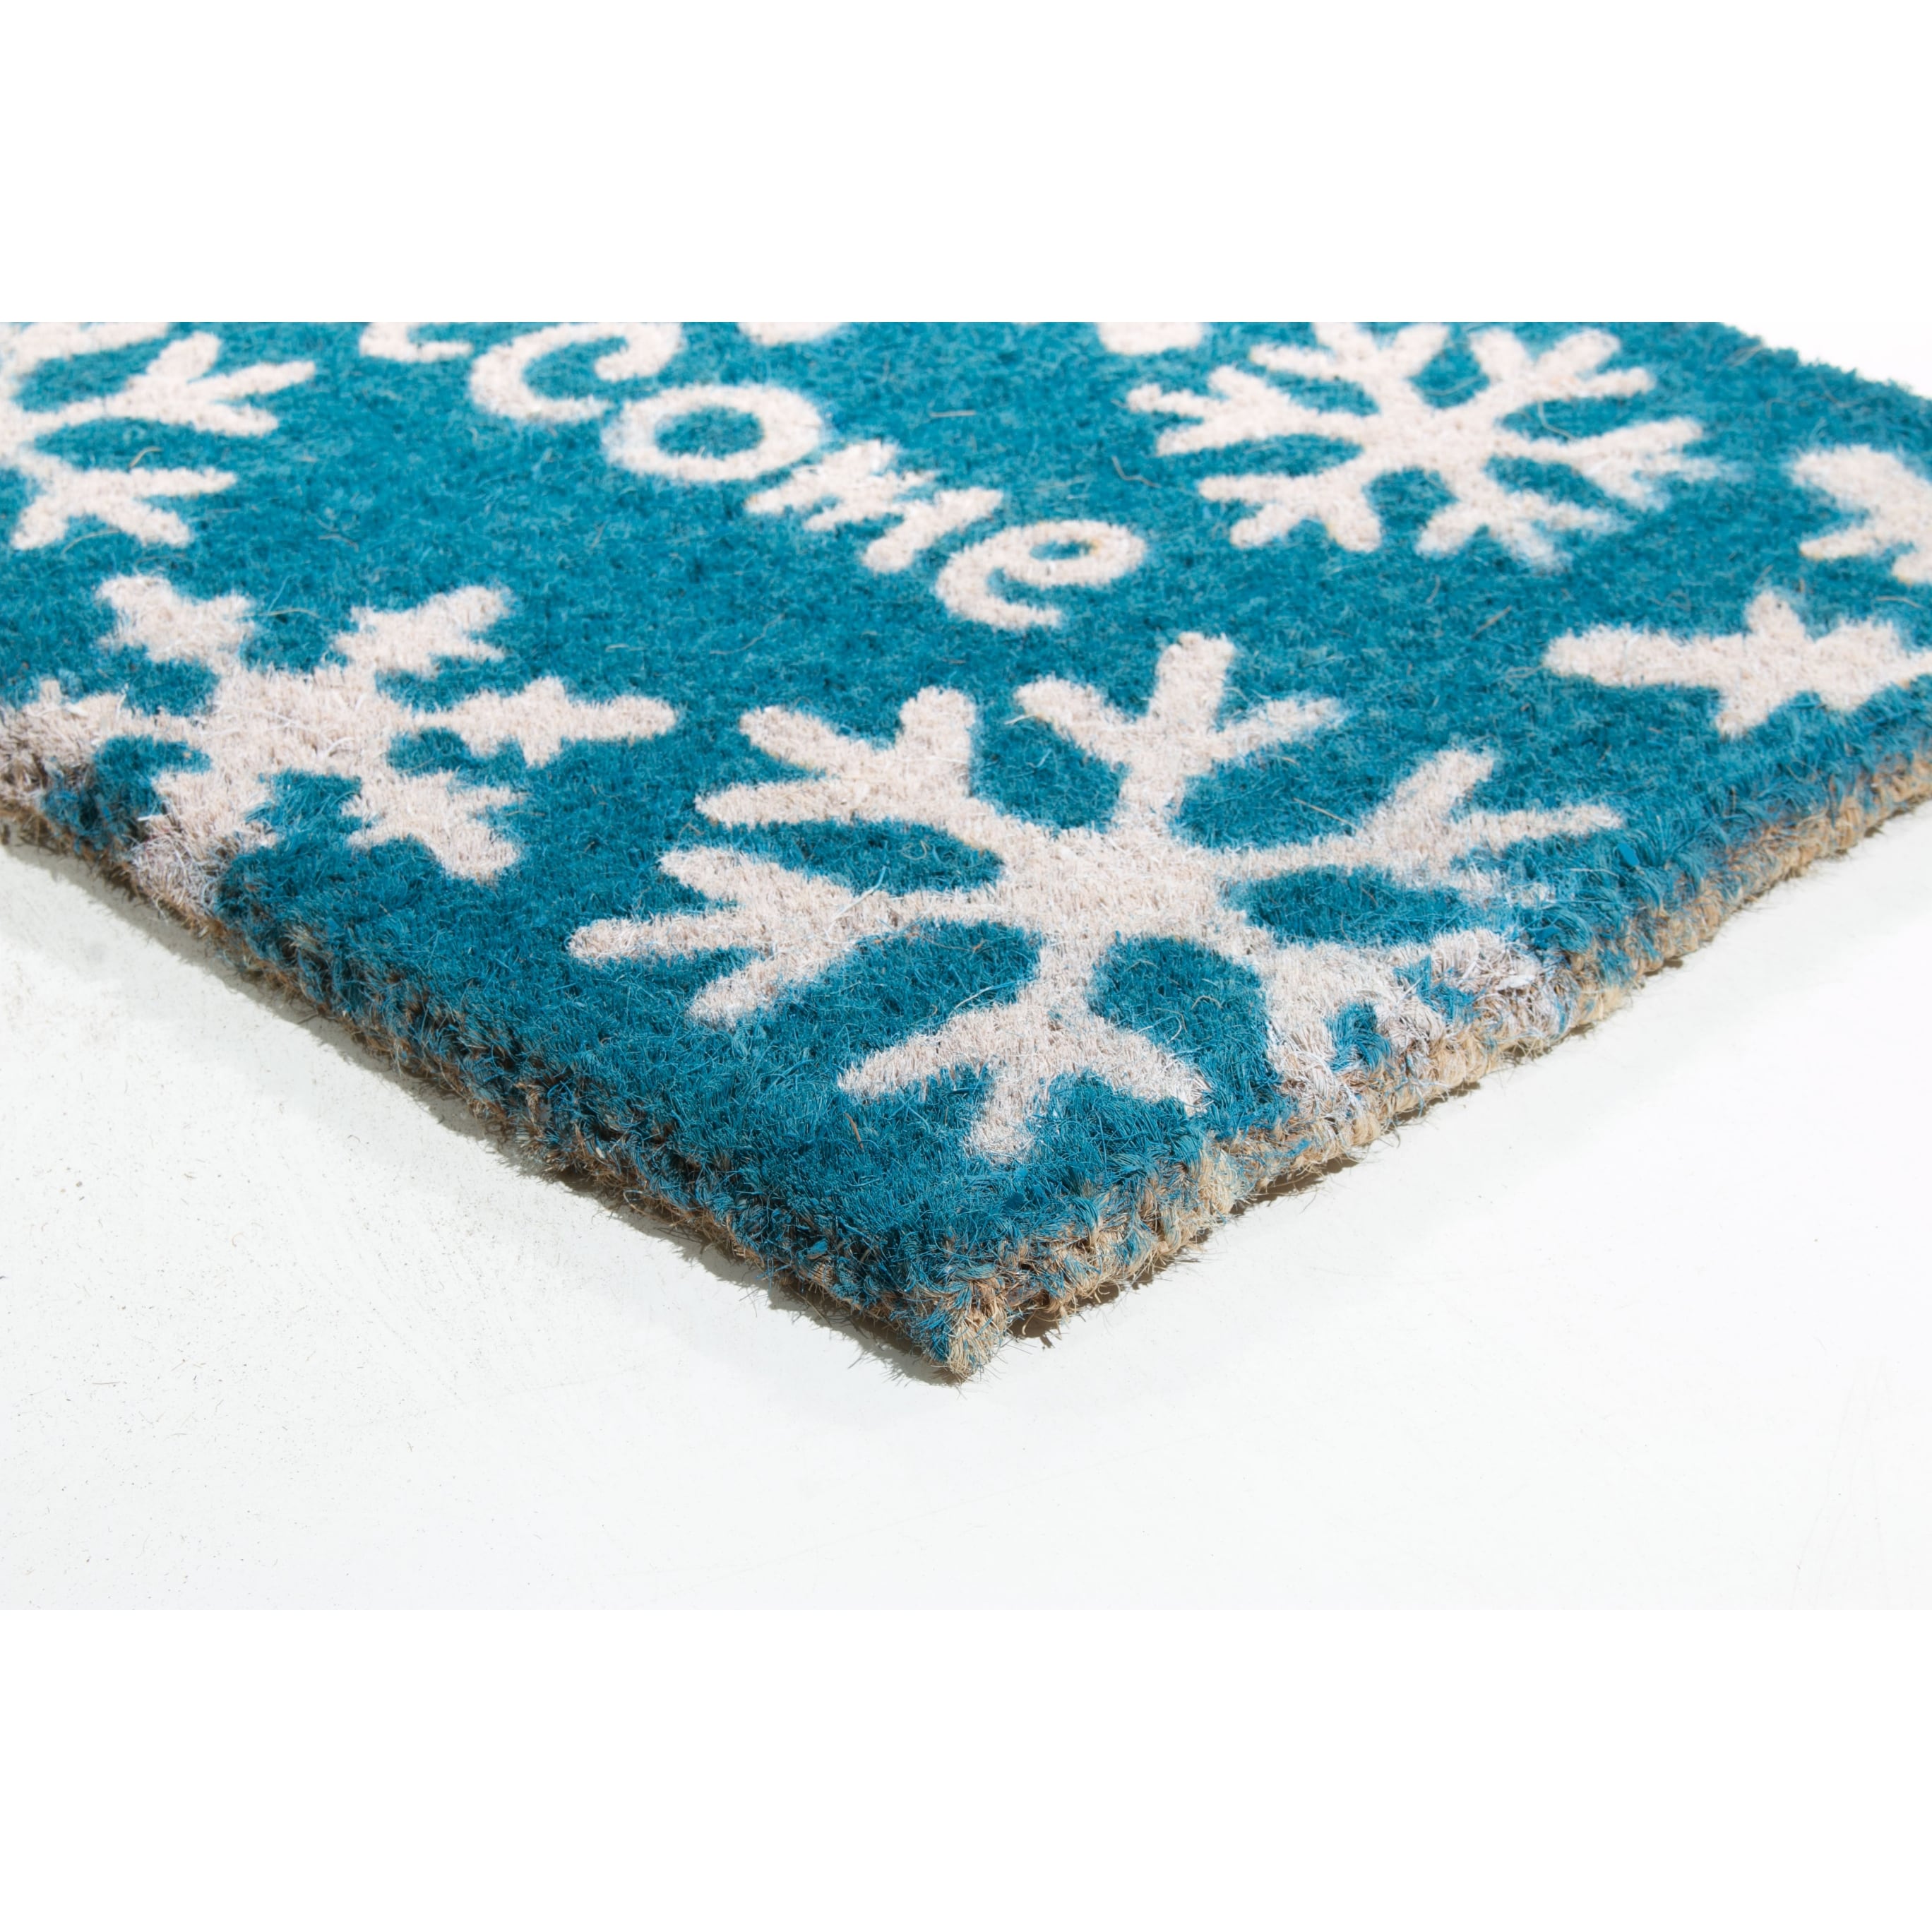 Snowflake Doormat Winter Doormat Cute Doormat Snow Welcome 